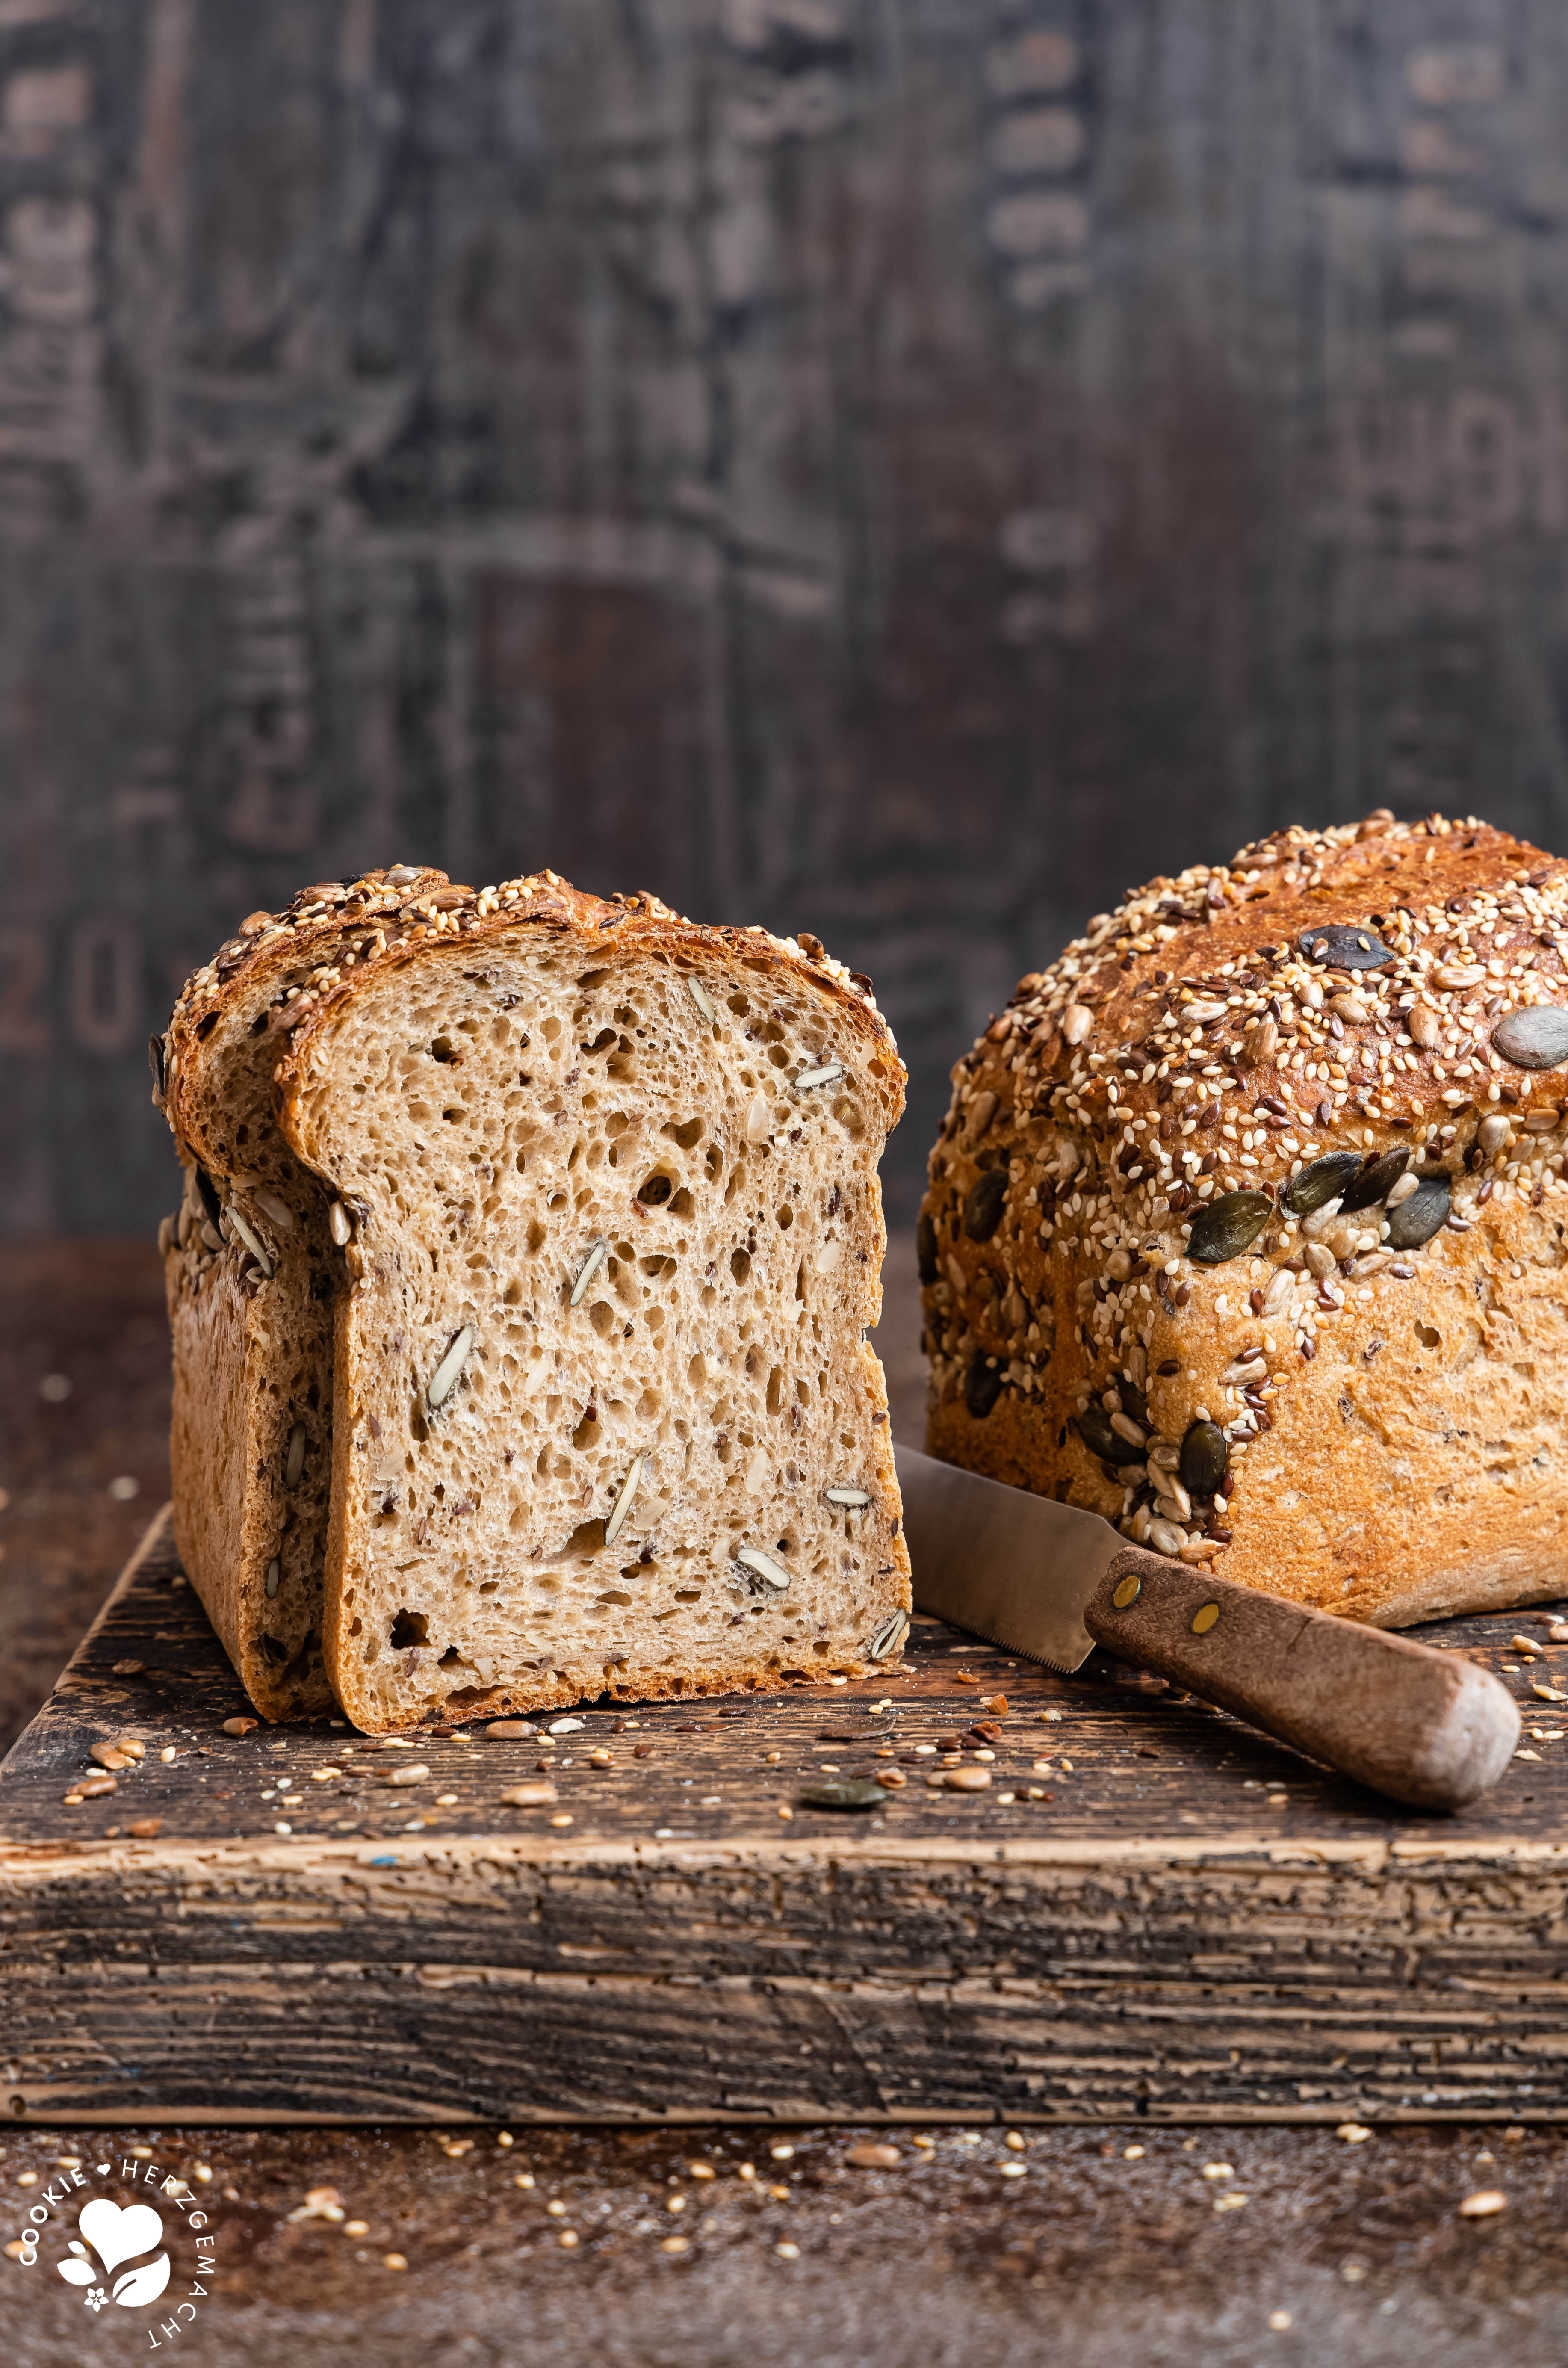 Produktbild aus For the love of bread - Zeit für gutes Brot